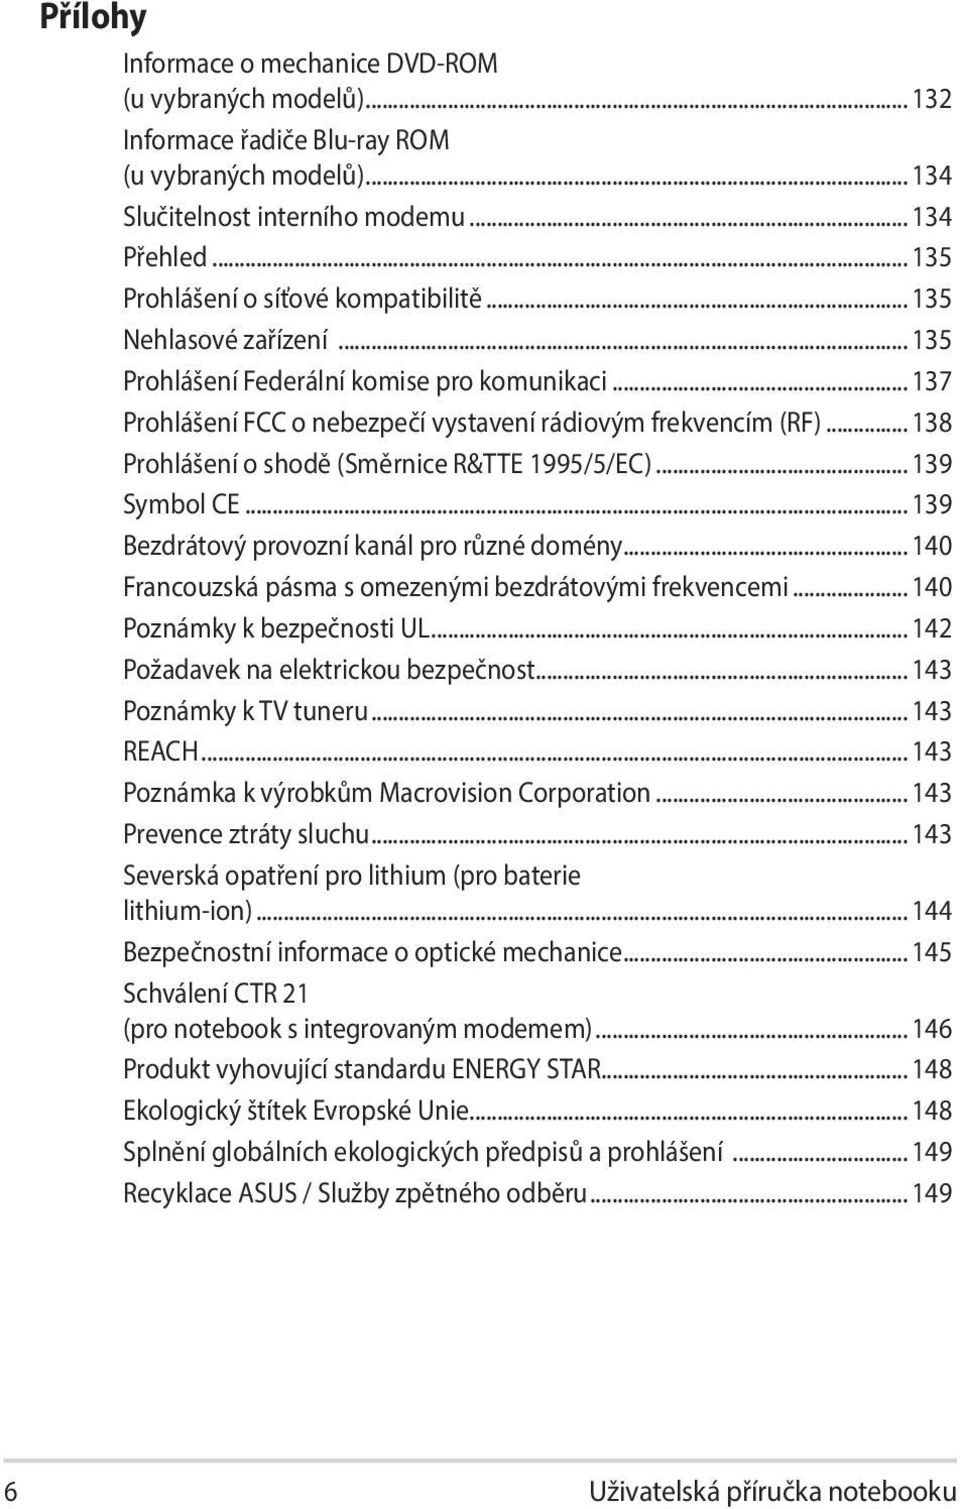 .. 138 Prohlášení o shodě (Směrnice R&TTE 1995/5/EC)... 139 Symbol CE... 139 Bezdrátový provozní kanál pro různé domény... 140 Francouzská pásma s omezenými bezdrátovými frekvencemi.